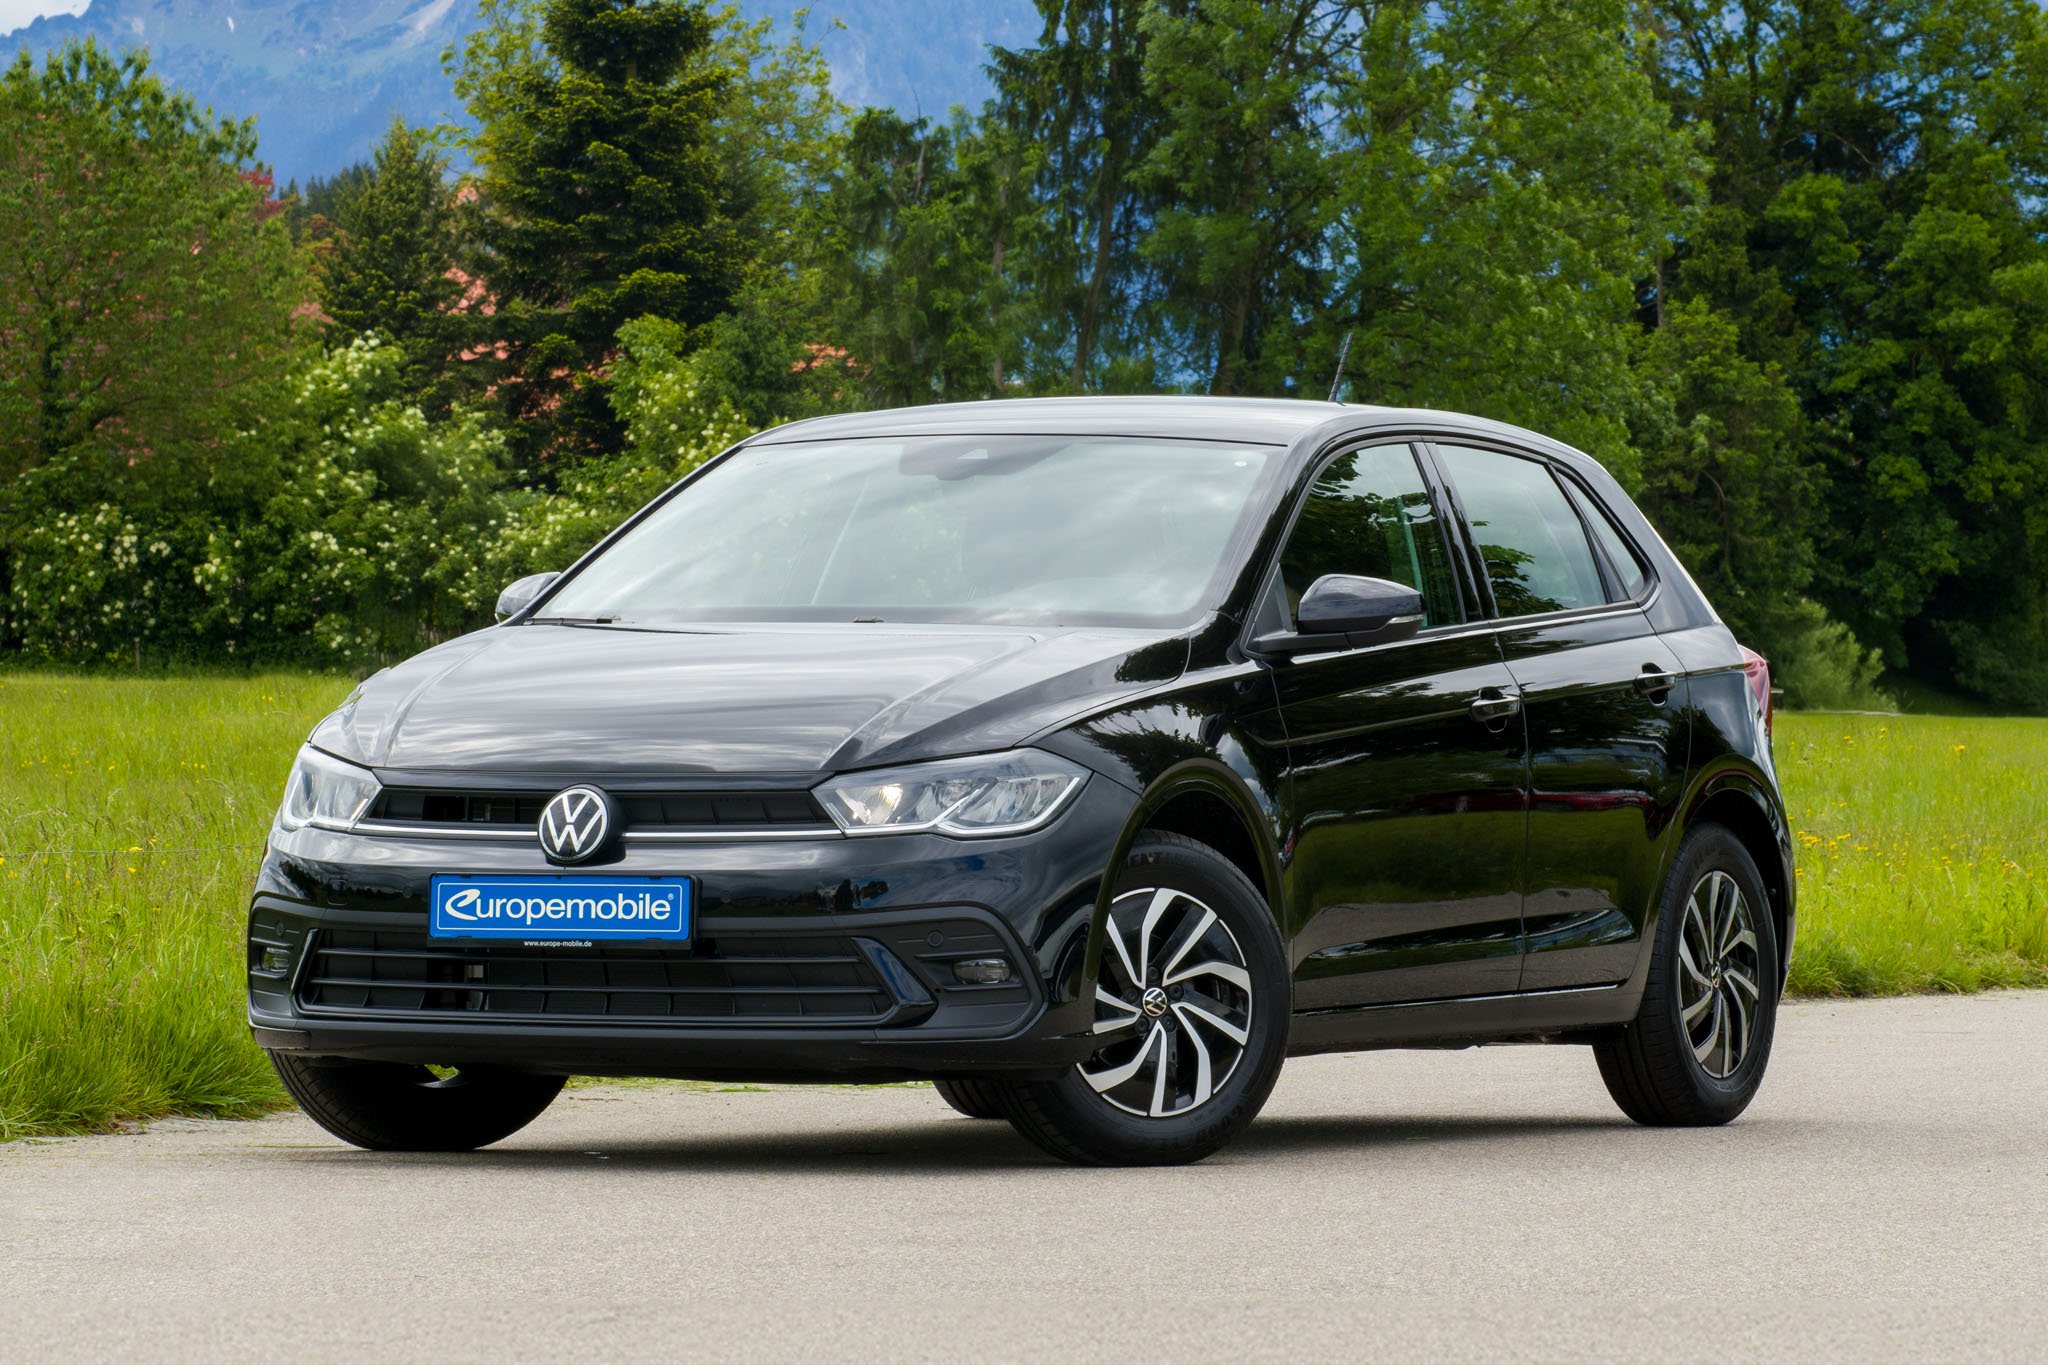 VW Polo LIFE 1.0 TSI 95 DSG Rauchgrau Metallic leasing angebot